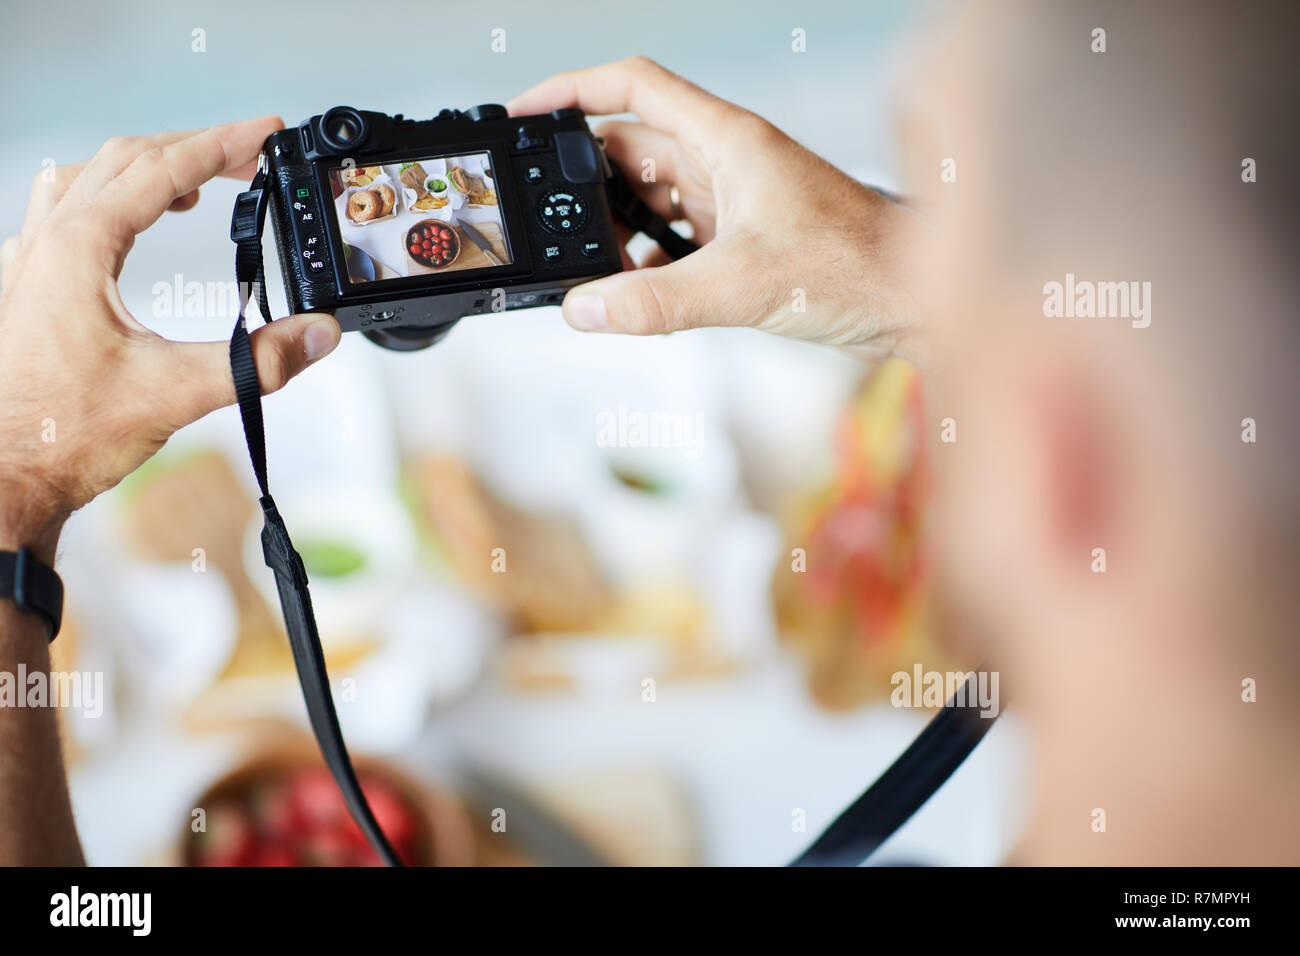 Sopra Visualizza Ingrandimento di un irriconoscibile fotografo holding fotocamera digitale durante la ripresa di immagini del cibo sul tavolo, spazio di copia Foto Stock